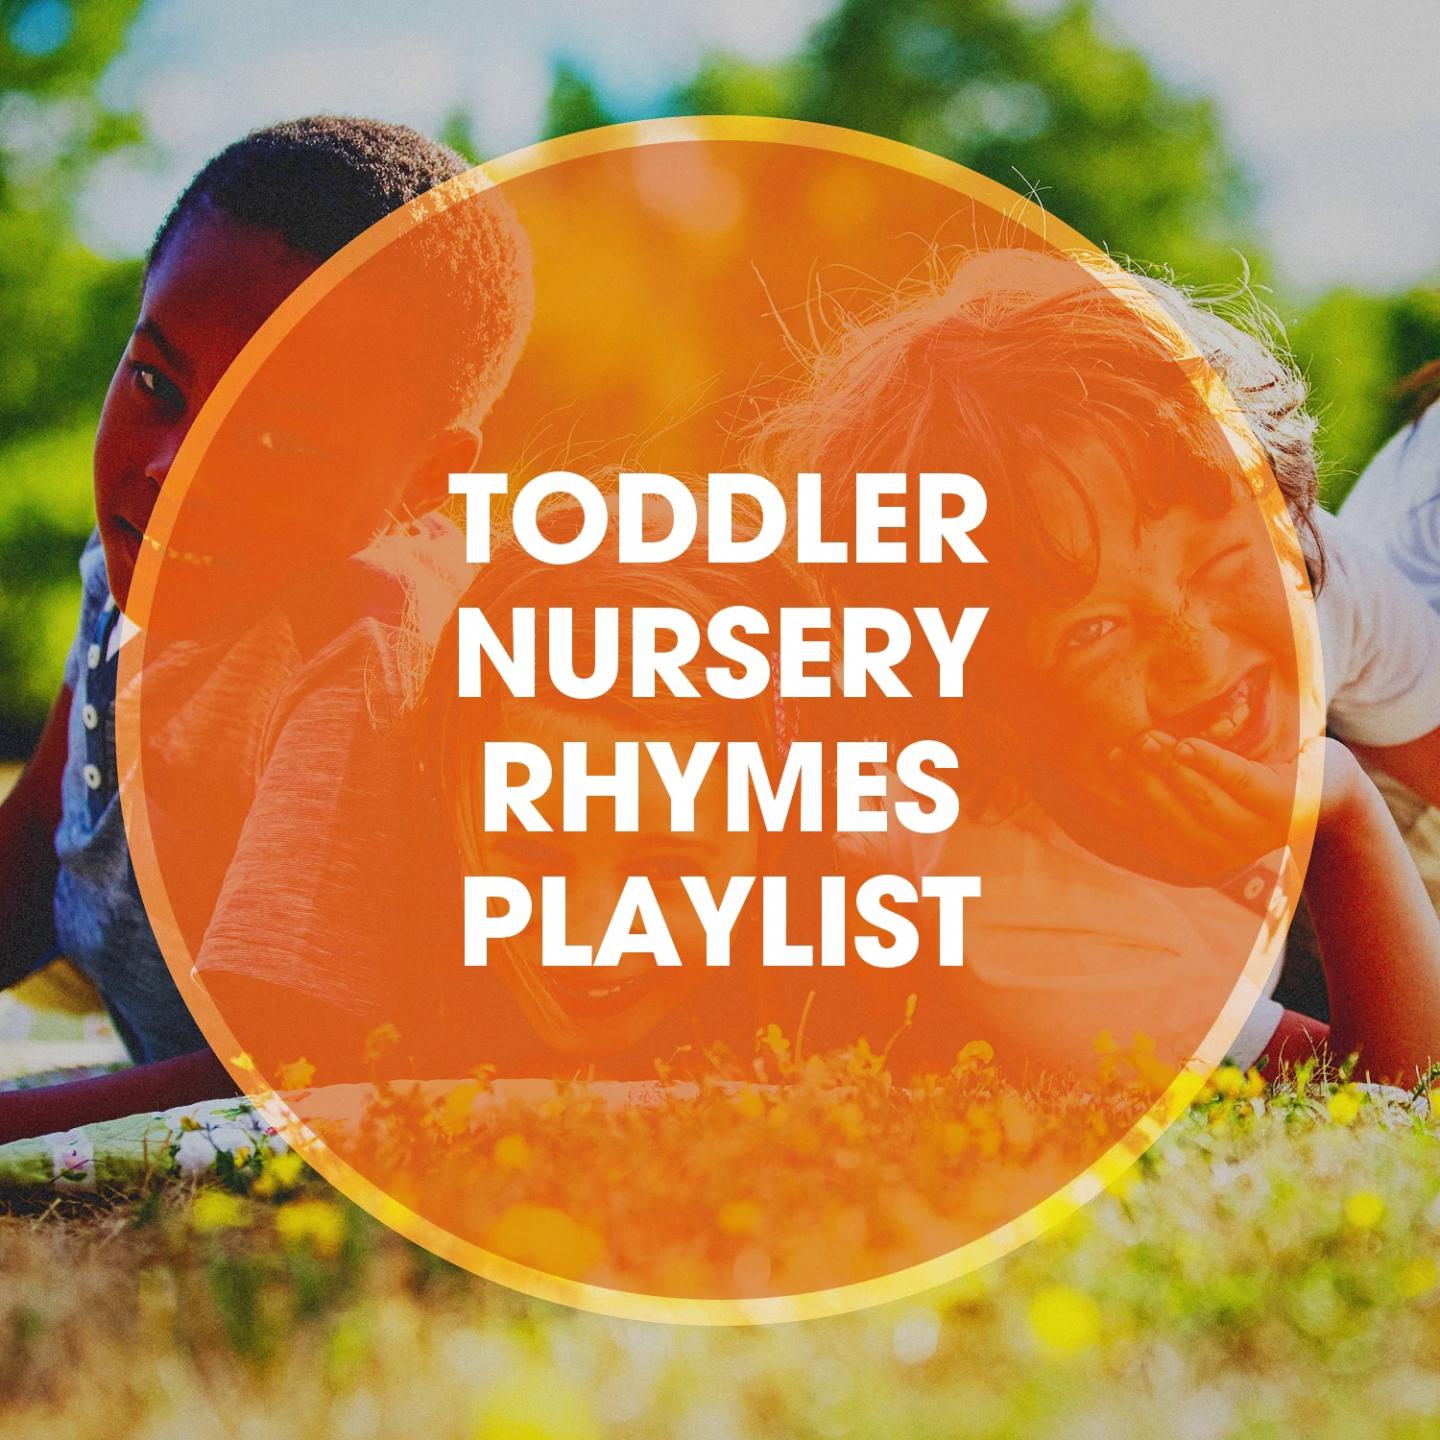 Toddler Nursery Rhymes Playlist